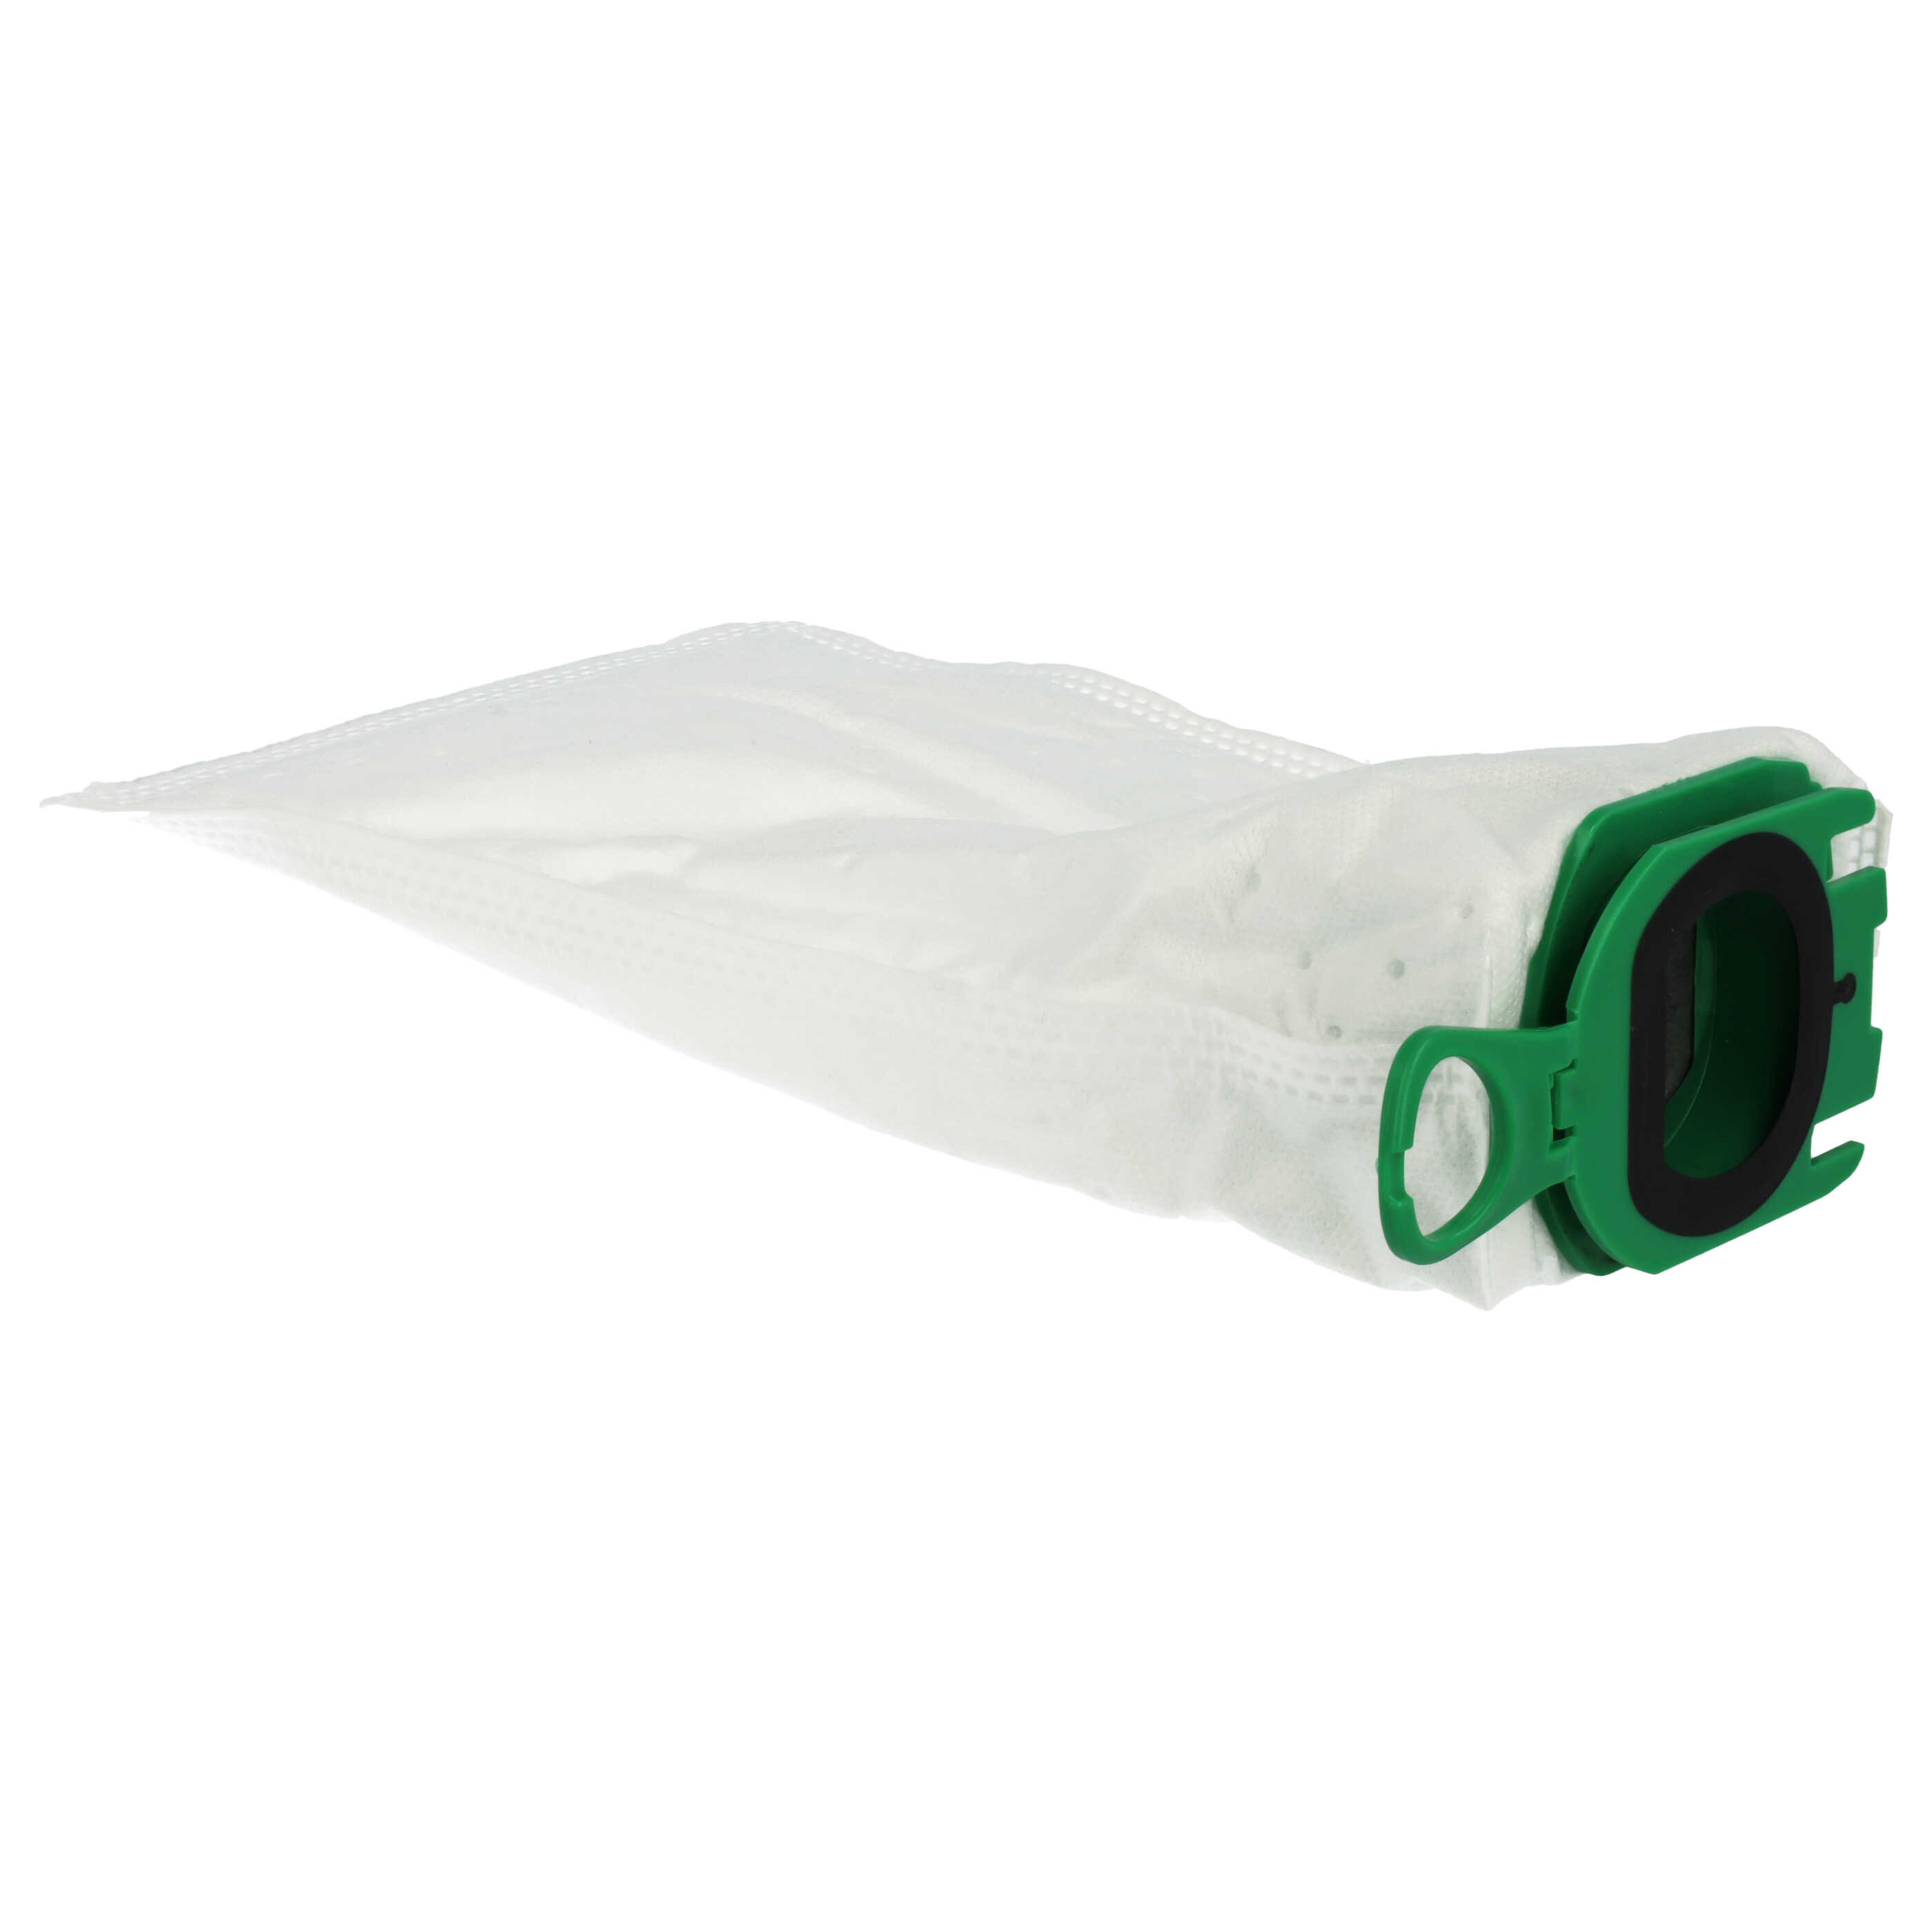 20x Vacuum Cleaner Bag suitable for Vorwerk Kobold VB100, EBB100, FP100 - microfleece